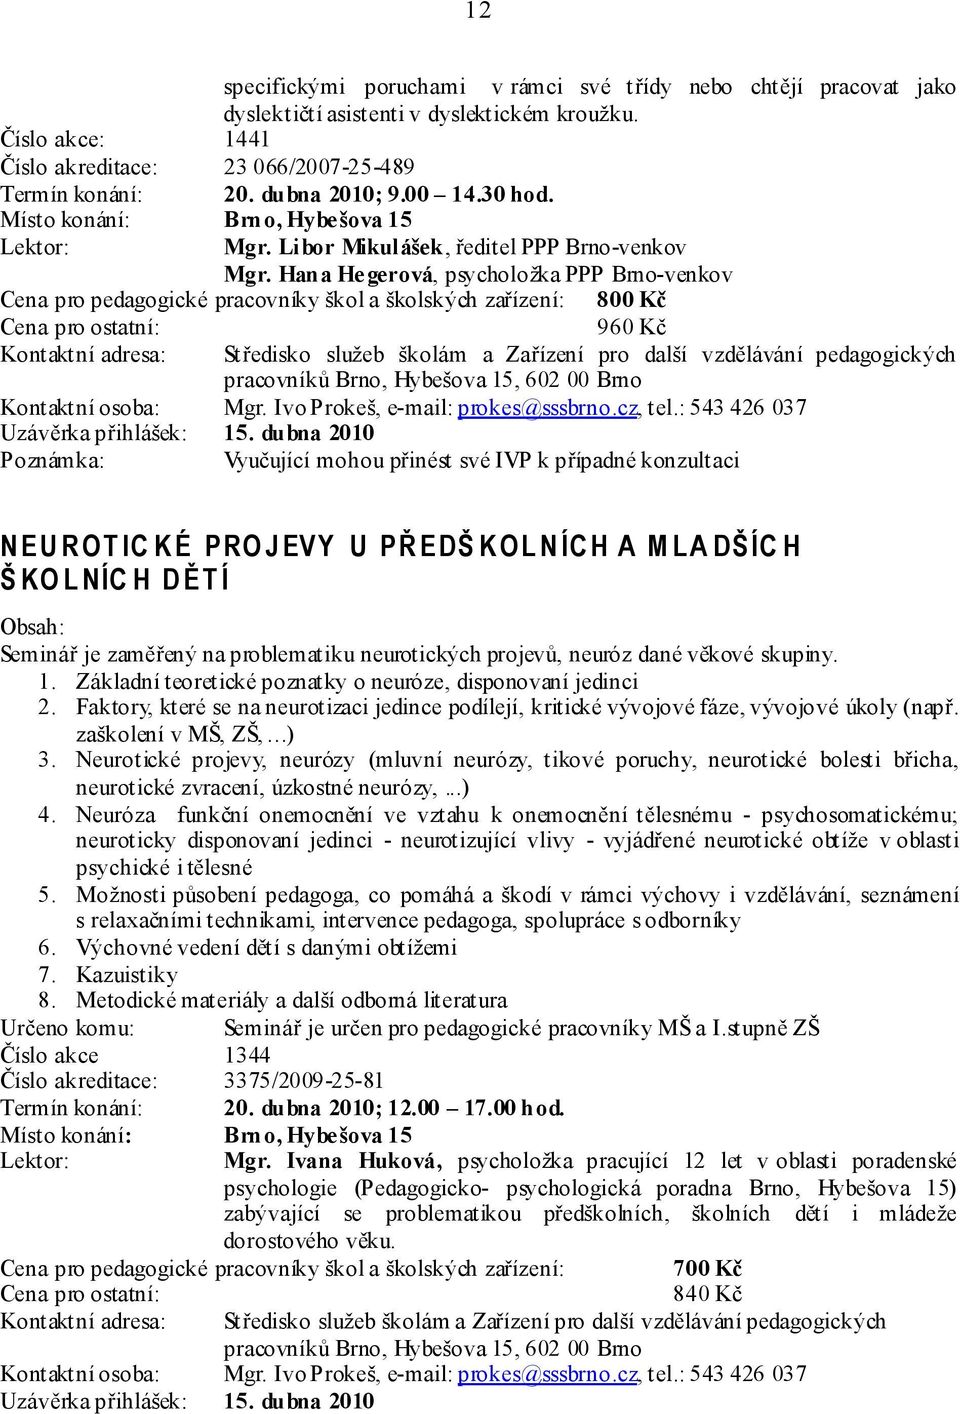 Hana Hegerová, psycholožka PPP Brno-venkov Cena pro pedagogické pracovníky škol a školských zařízení: 800 Kč : 960 Kč Kontaktní osoba: Mgr. Ivo Prokeš, e-mail: prokes@sssbrno.cz, tel.